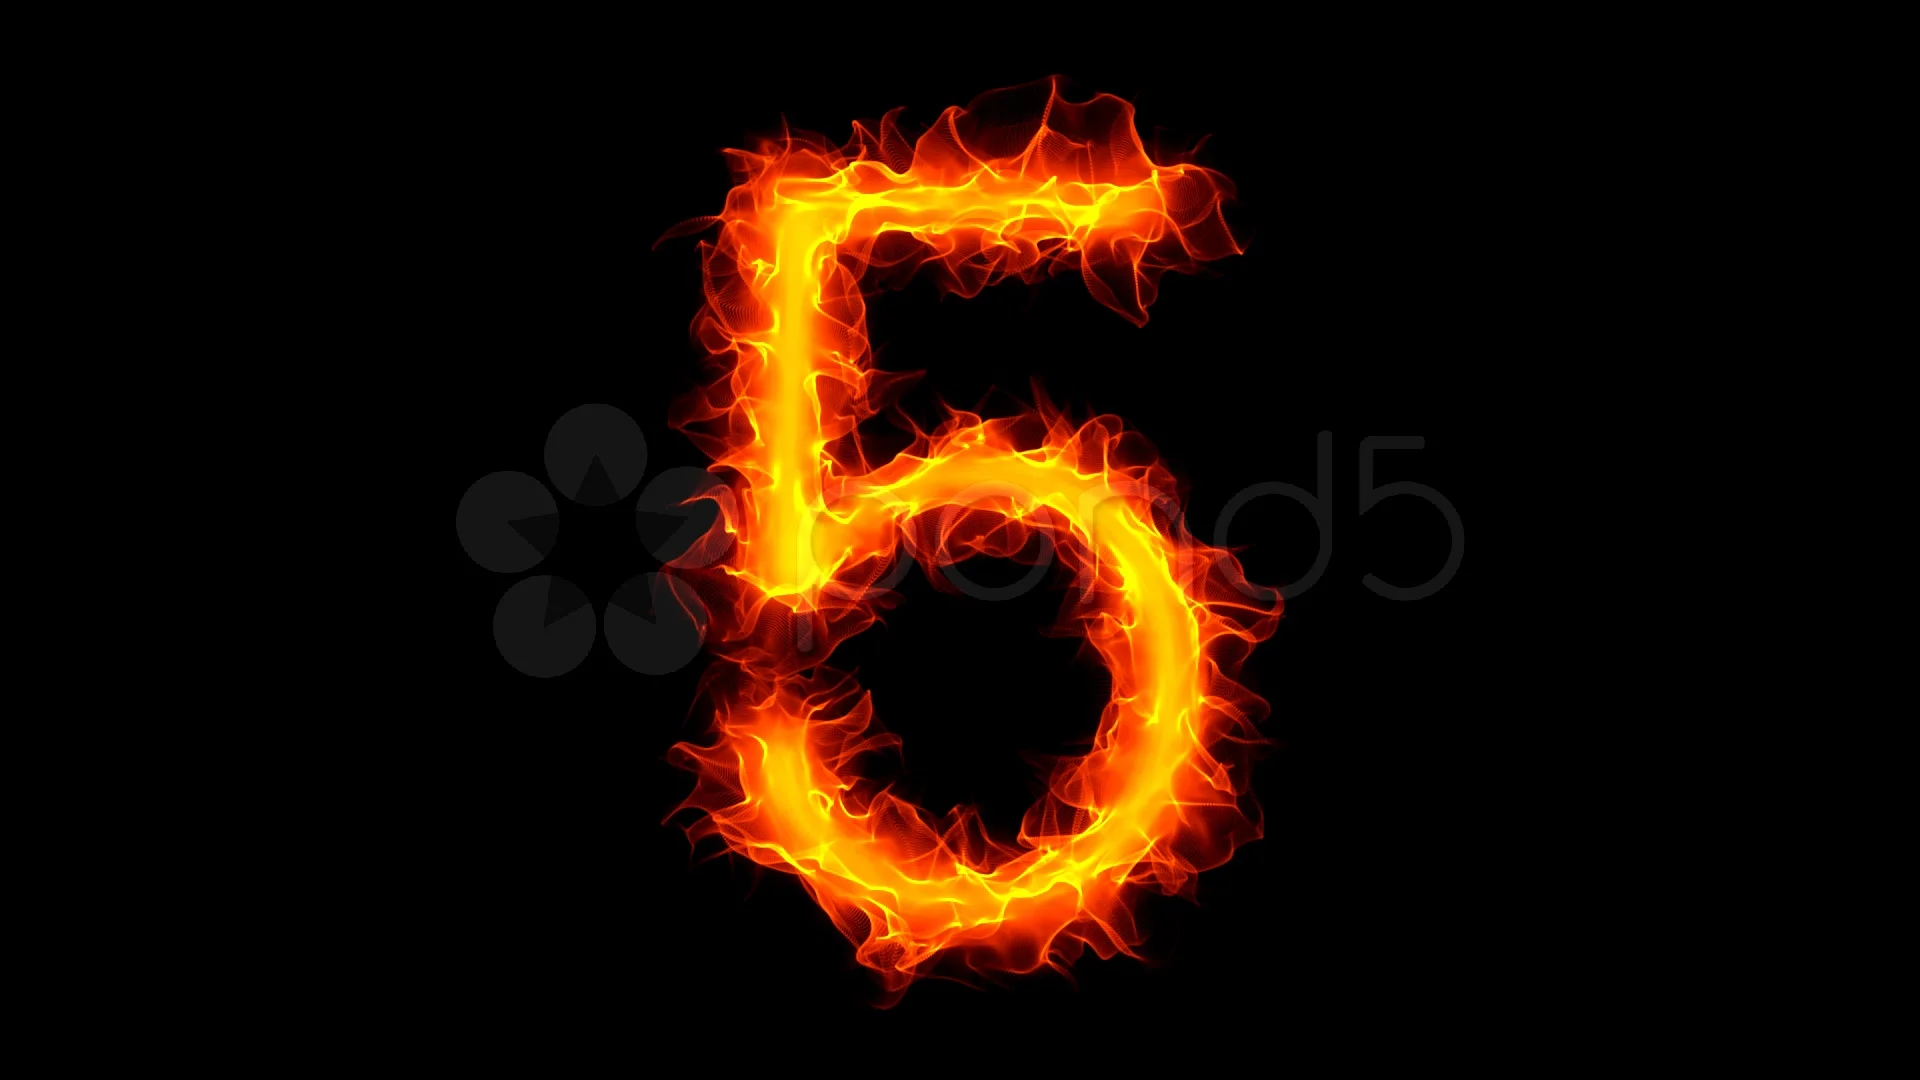 Numero 5 free fire